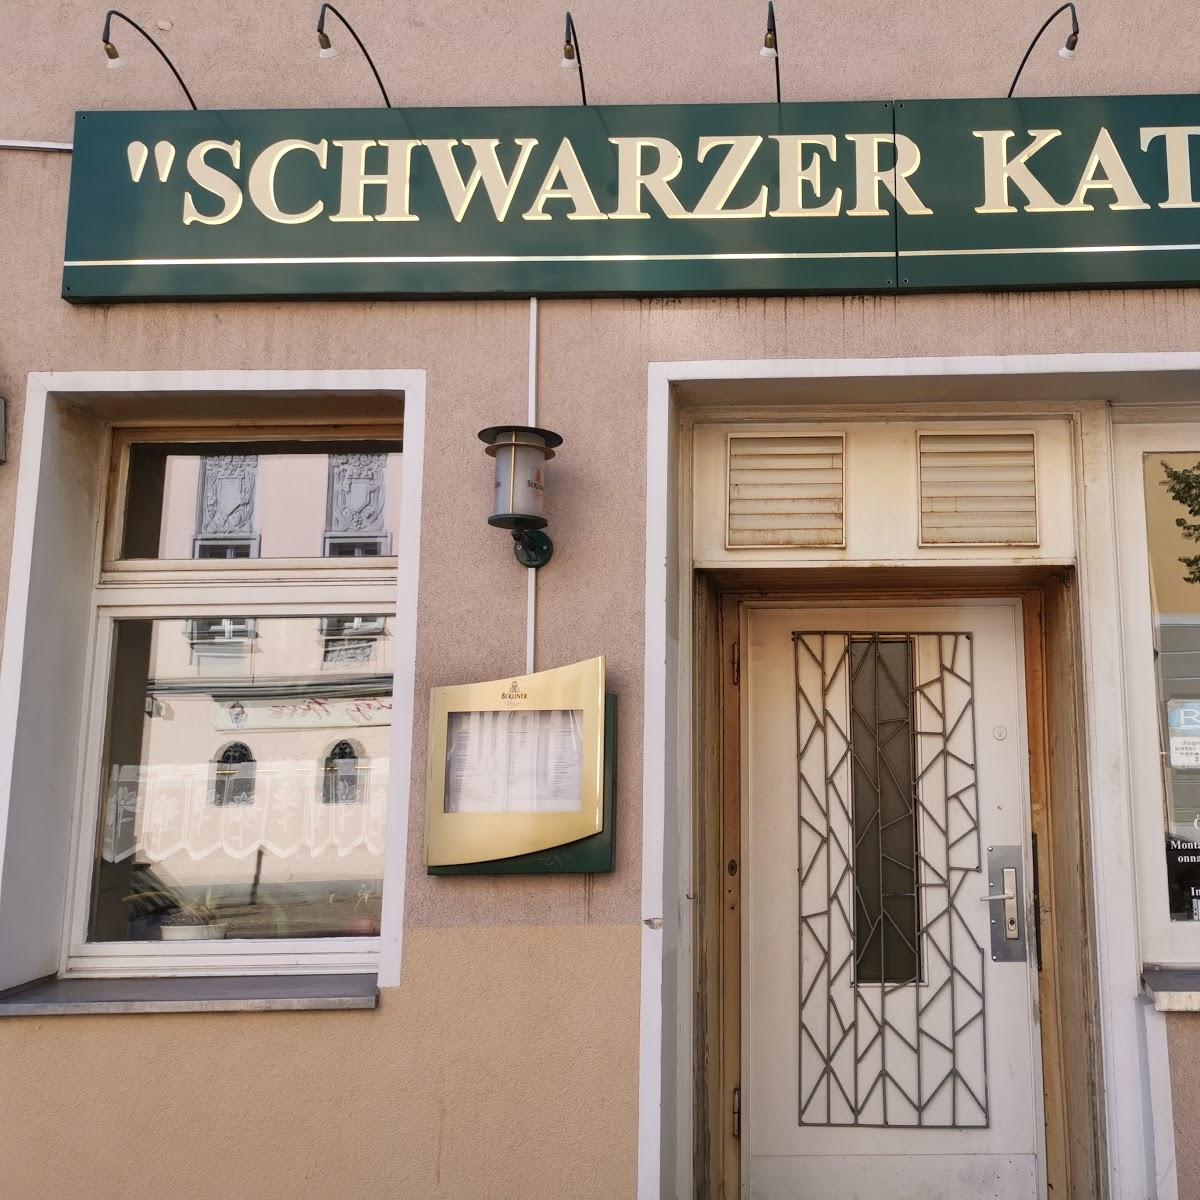 Restaurant "Gaststätte Schwarzer Kater" in  Berlin